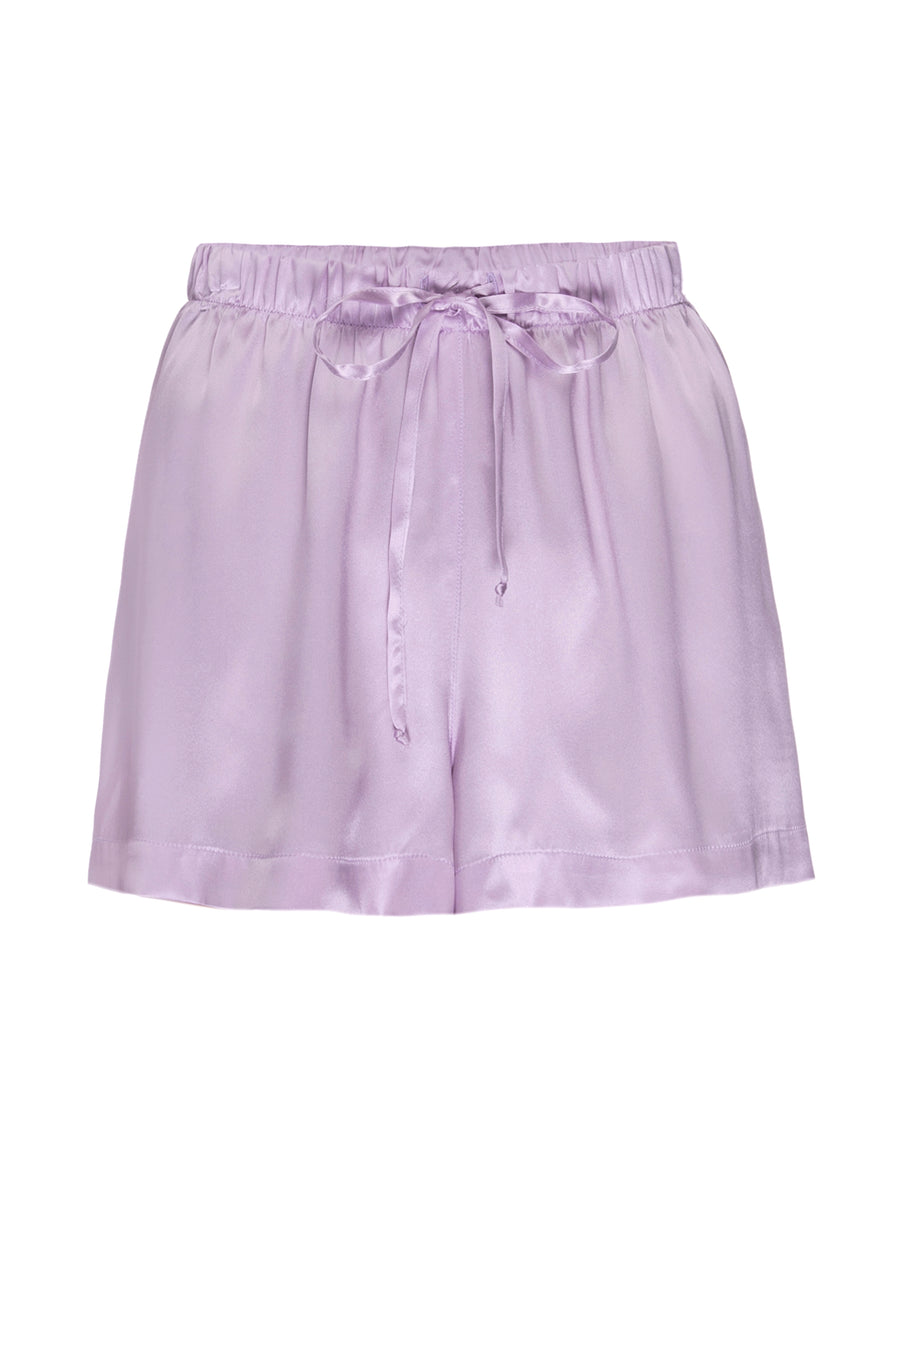 Silk Charmeuse PJ Shorts: Lilac